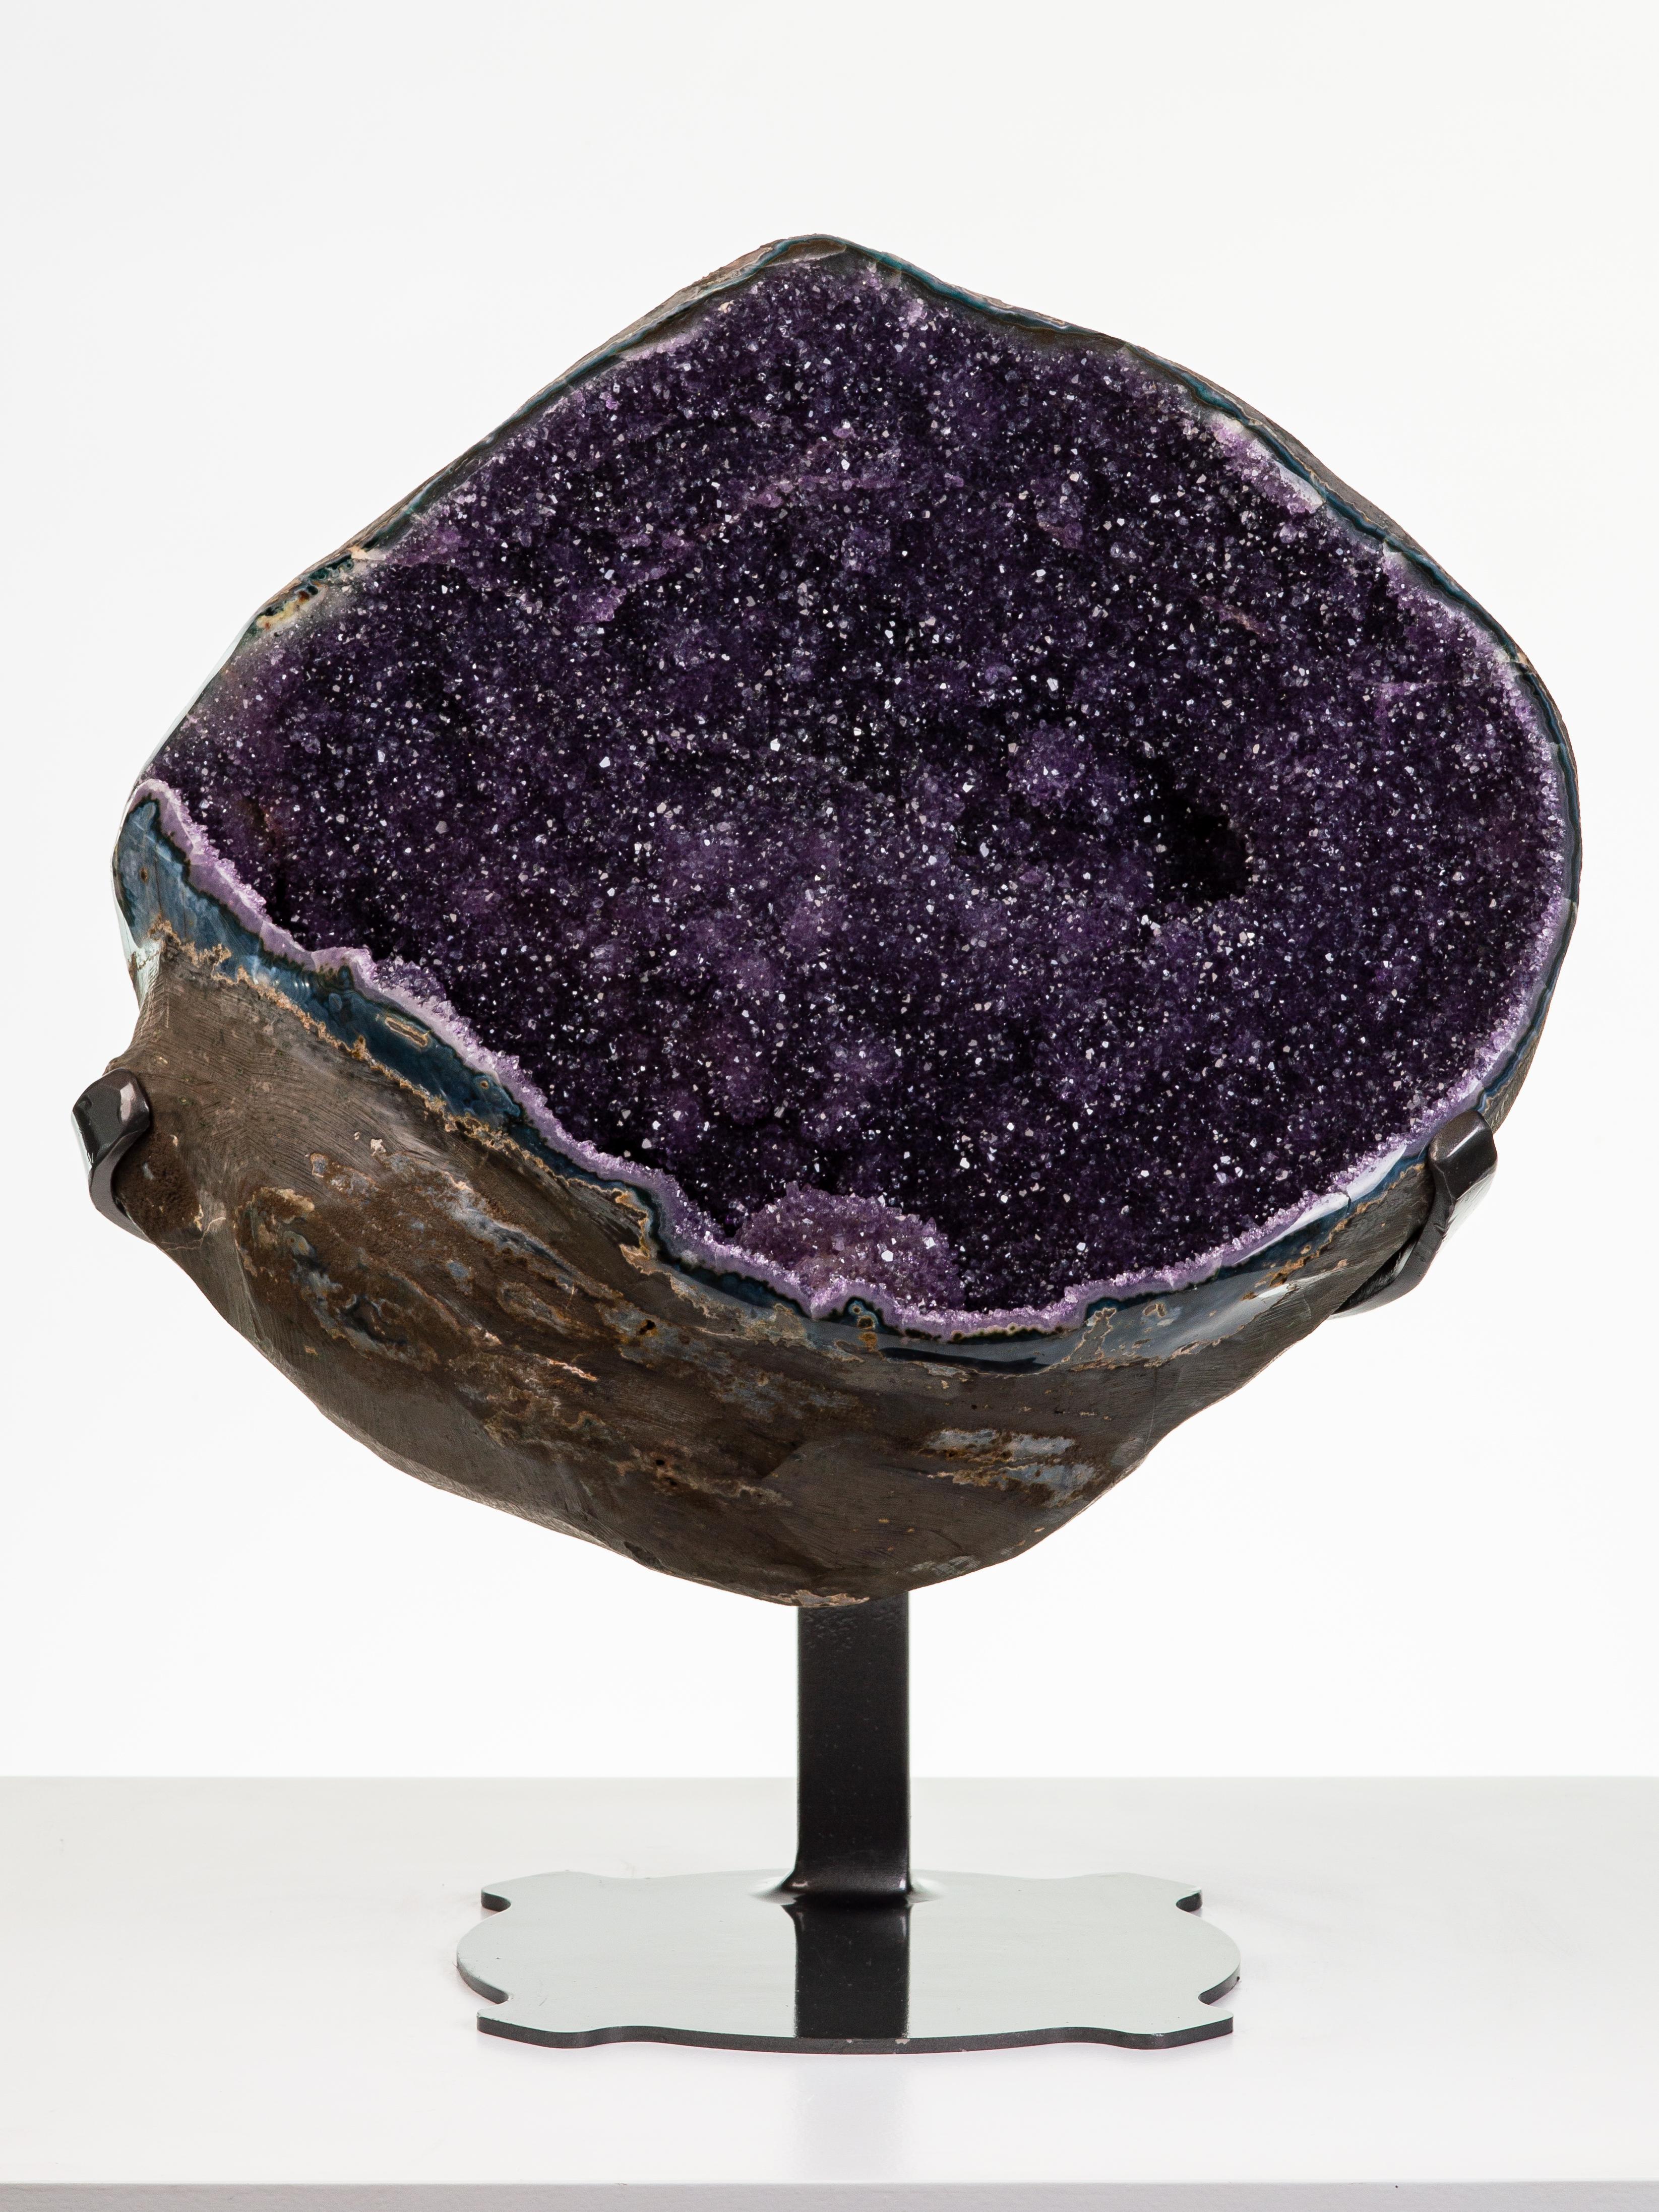 Une merveilleuse et substantielle géode sphérique est montrée ici, avec un violet profond
des cristaux d'améthyste enveloppant une calcite centrale. Une quintessence de la géode et une
une pièce d'exposition remarquable.

Cette pièce a été